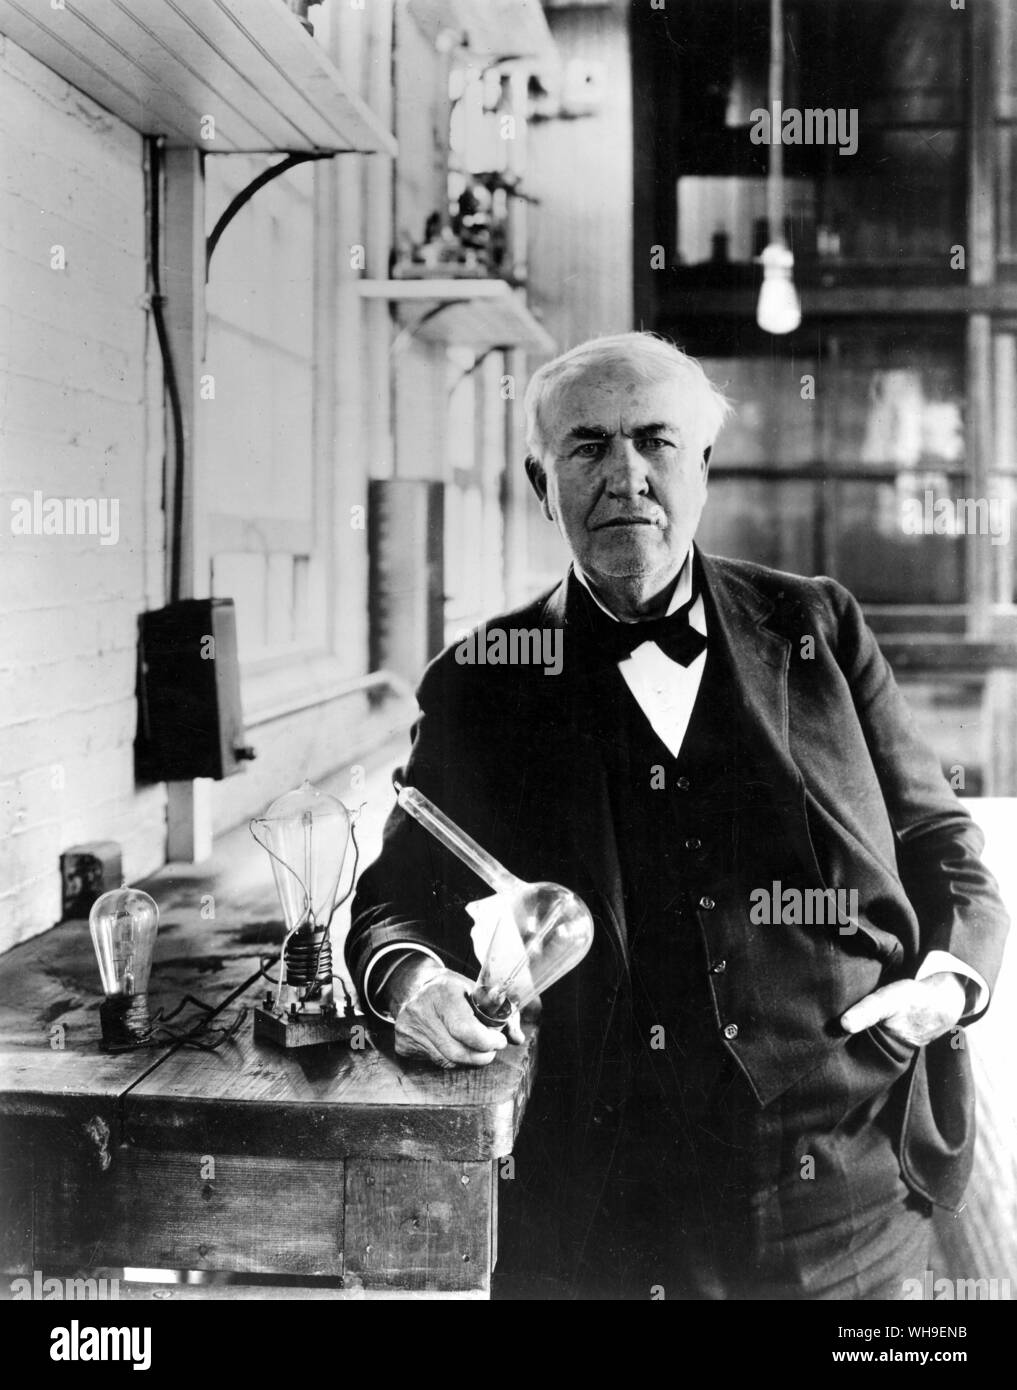 Thomas a Edison (1847-1931), noi lo scienziato e inventore, con oltre 1000 brevetti. Nel 1889 egli ha formato la Edison Light Company. Egli sta qui con alcuni dei suoi Edison lampade di effetto. Foto Stock